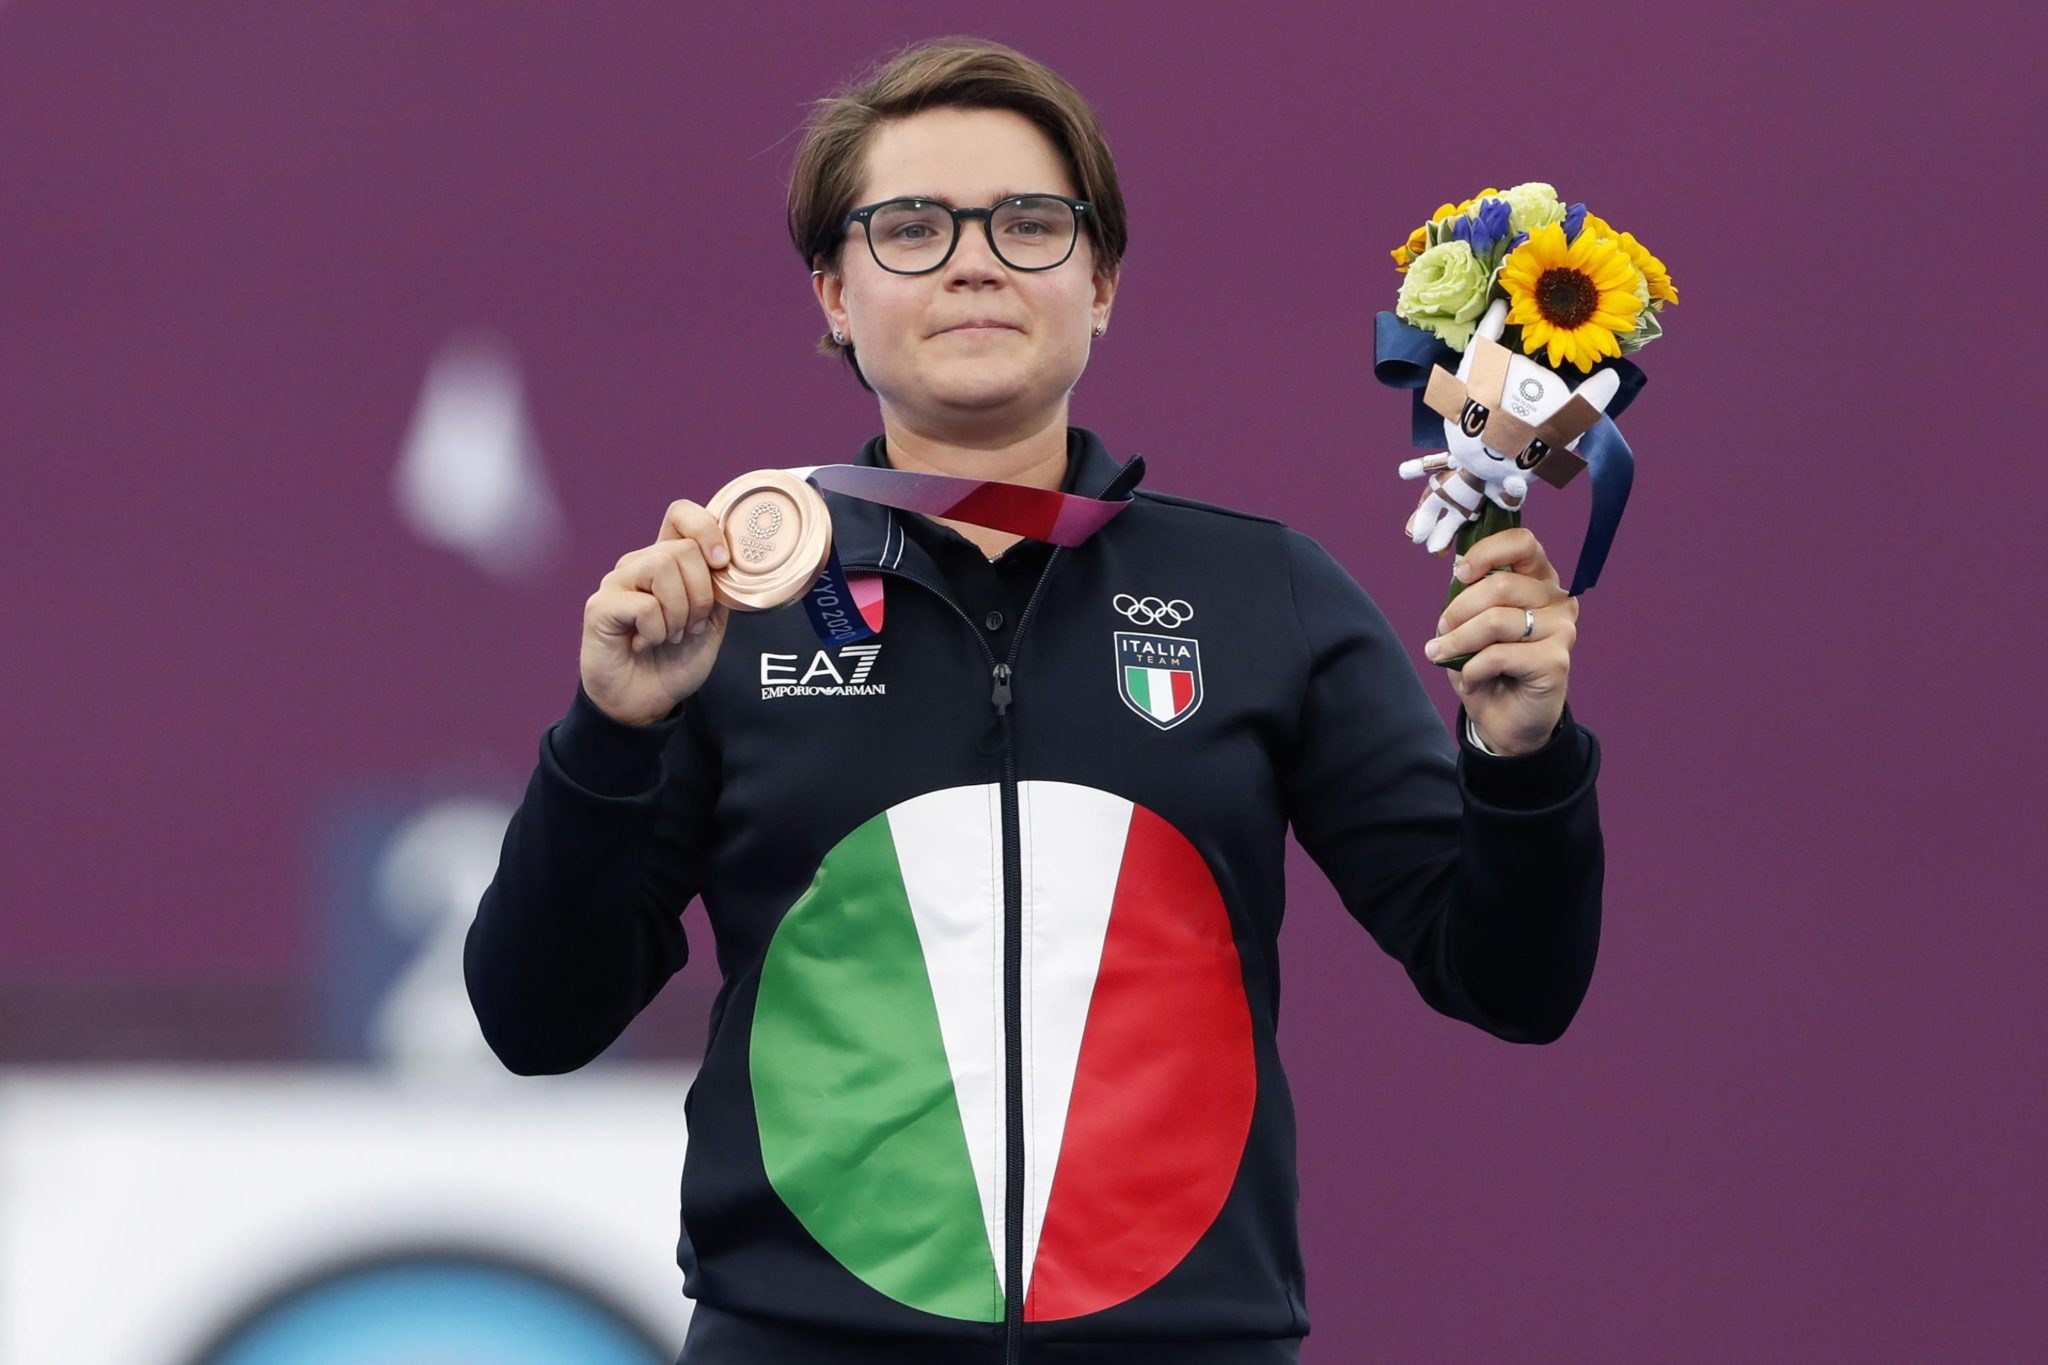 Итальянская спортсменка совершила каминг-аут на Олимпиаде в Японии - Парни  ПЛЮС